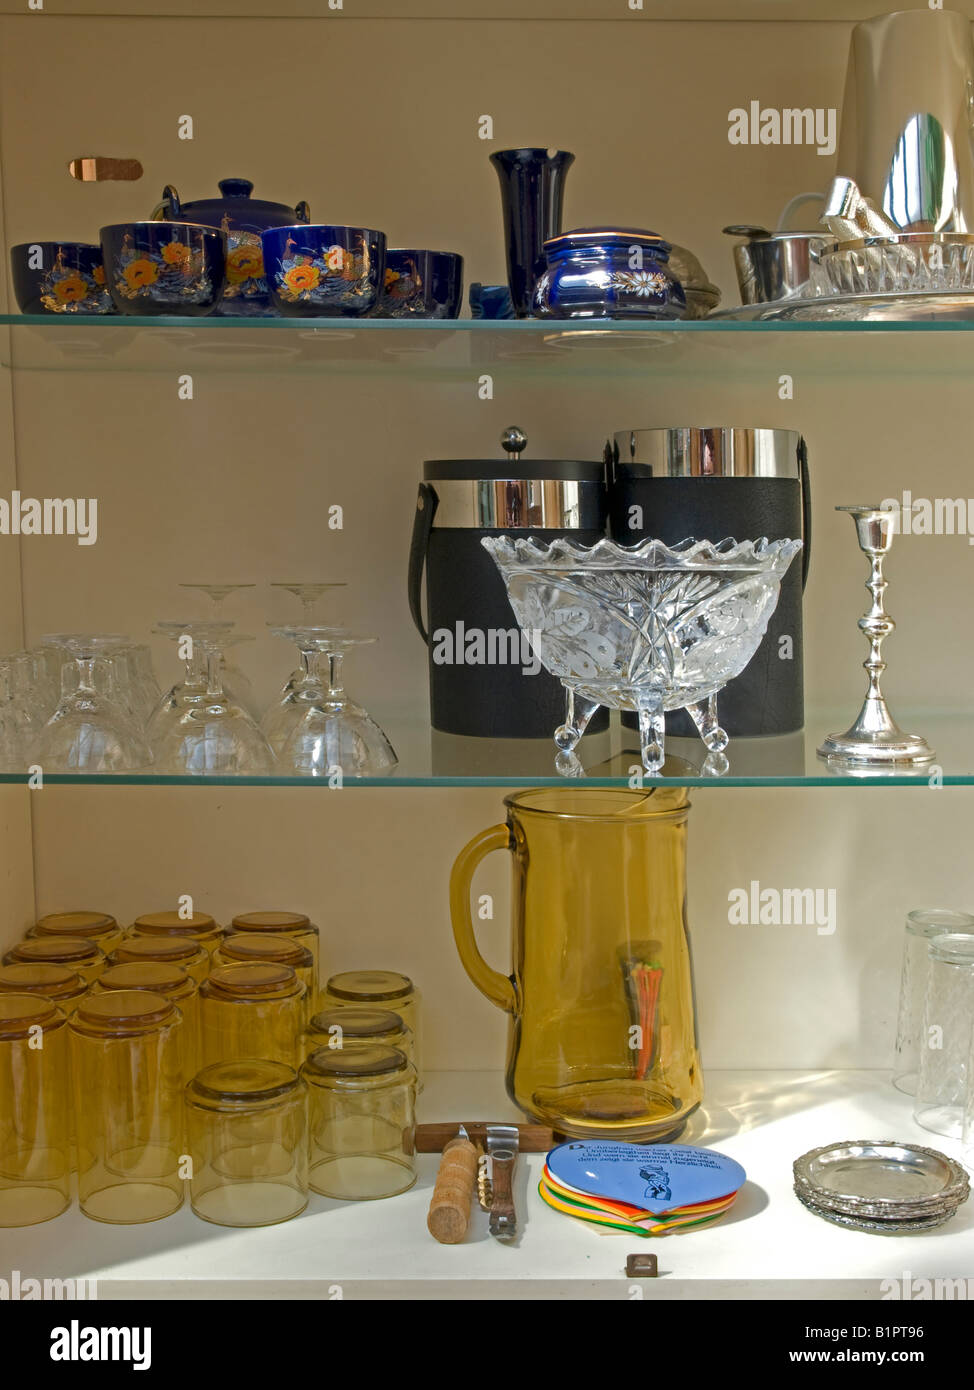 Service à thé bleu chrystal et verres de cristal dans un placard kitsch Banque D'Images